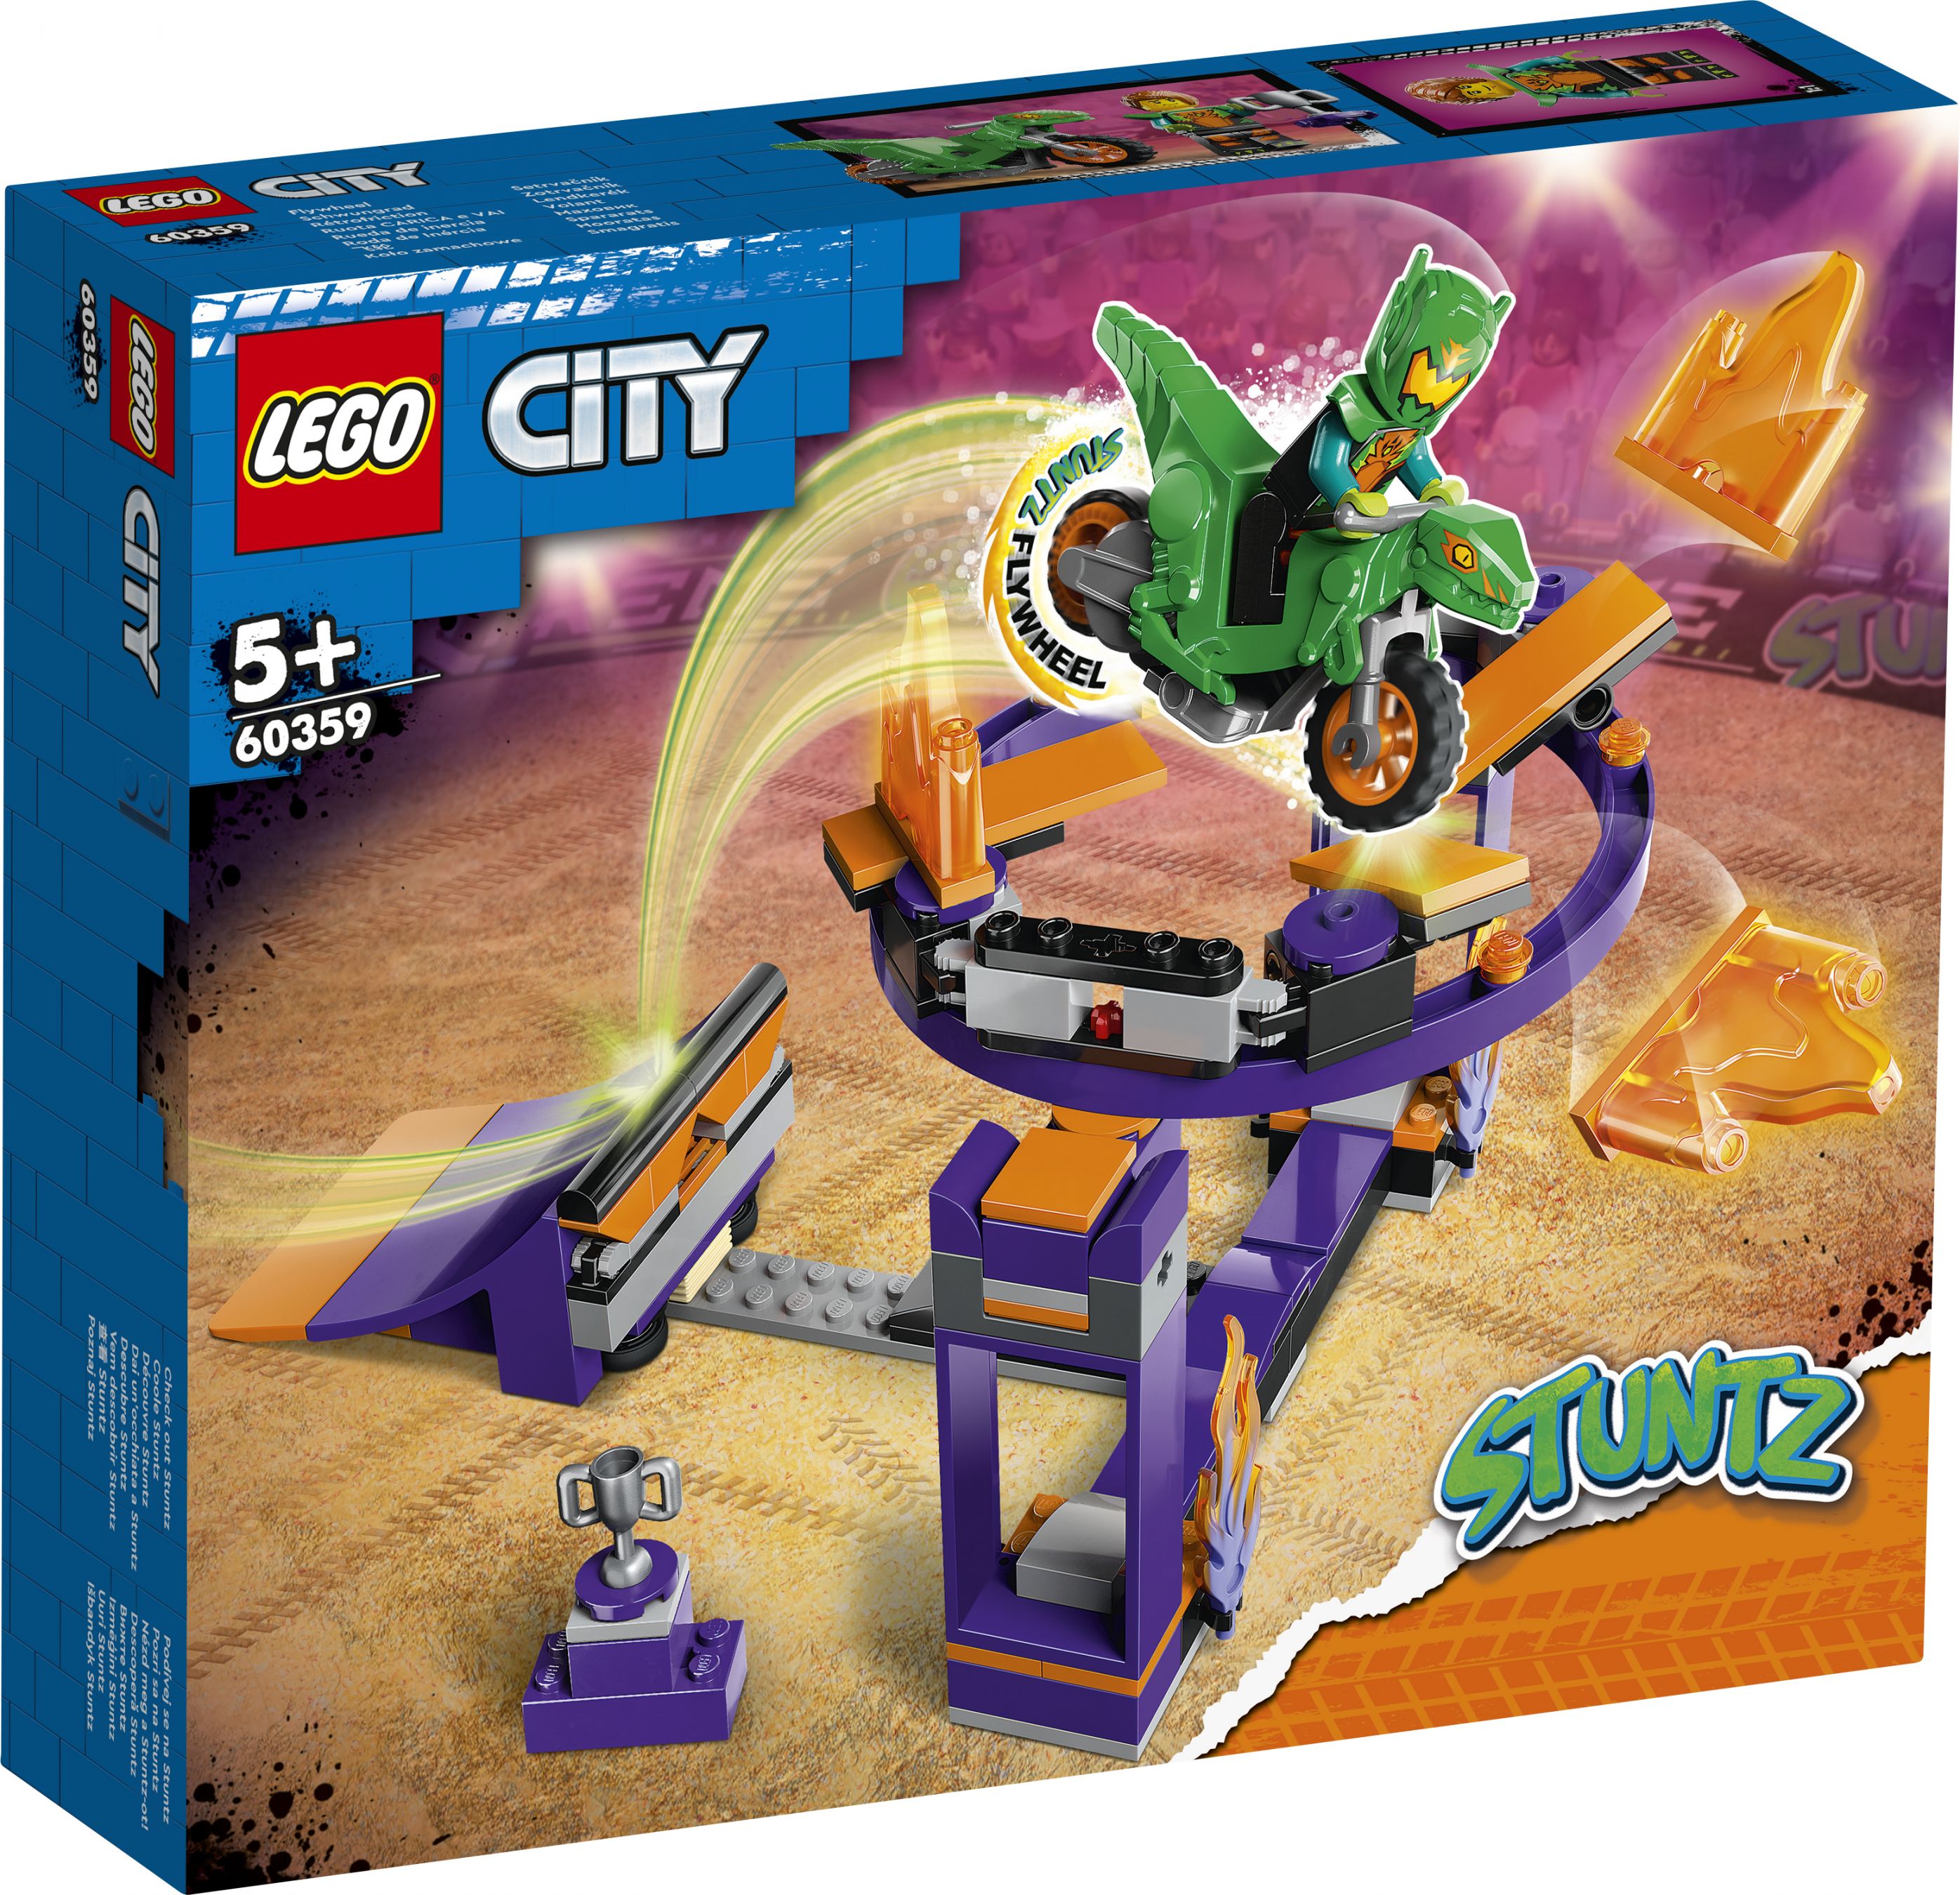 LEGO City 60359 Stuntrampe mit Dunk-Challenge LEGO_60359_Box1_v29.jpg